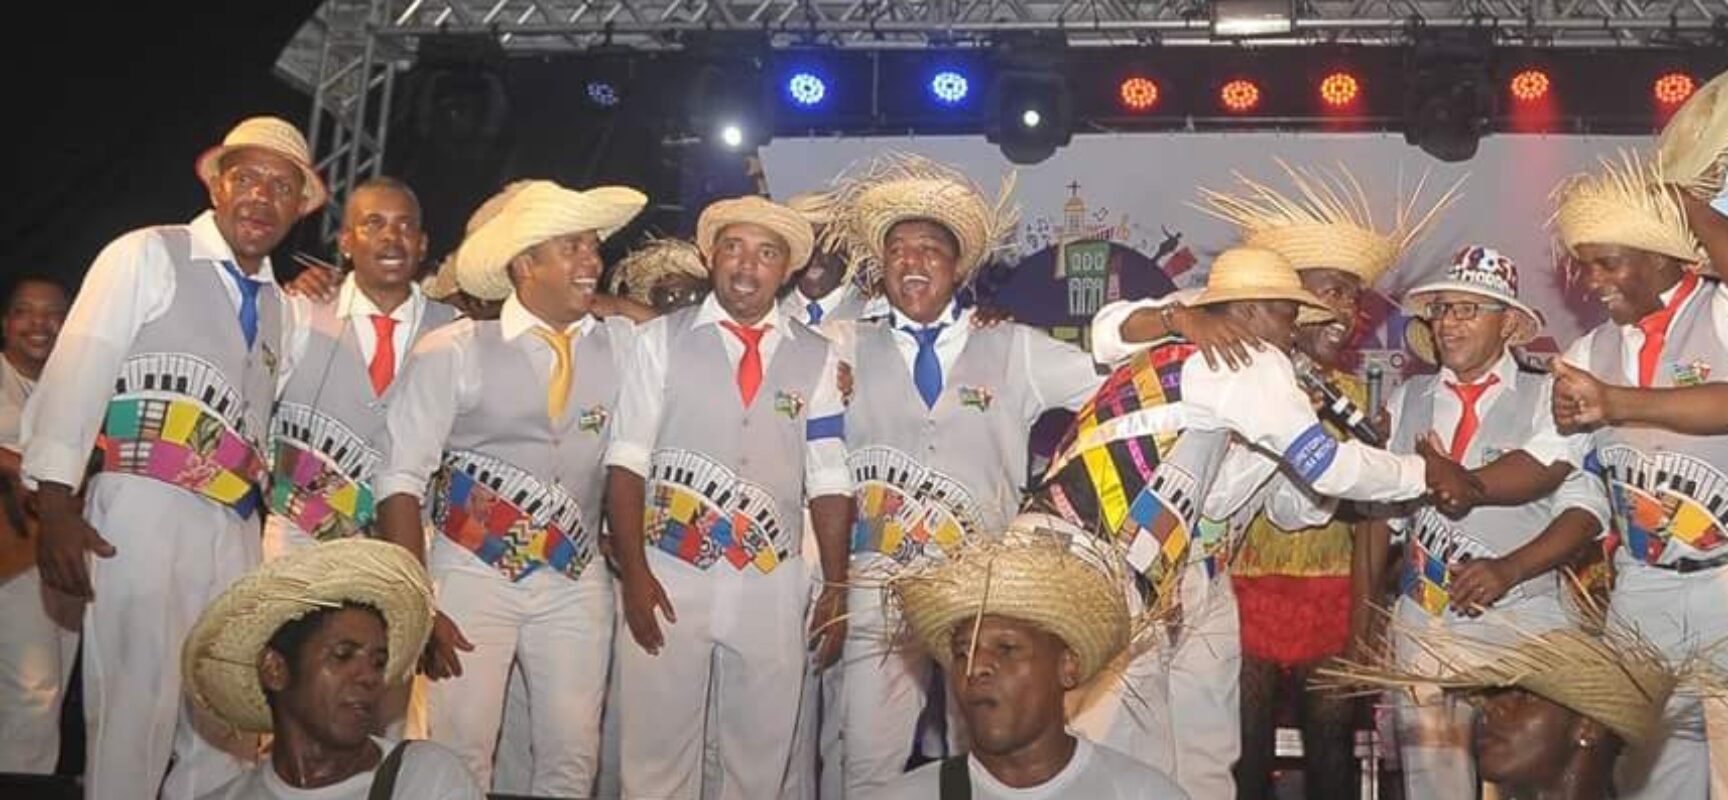 Liga do Samba Junino realiza o V Festival de Samba Junino neste final de semana